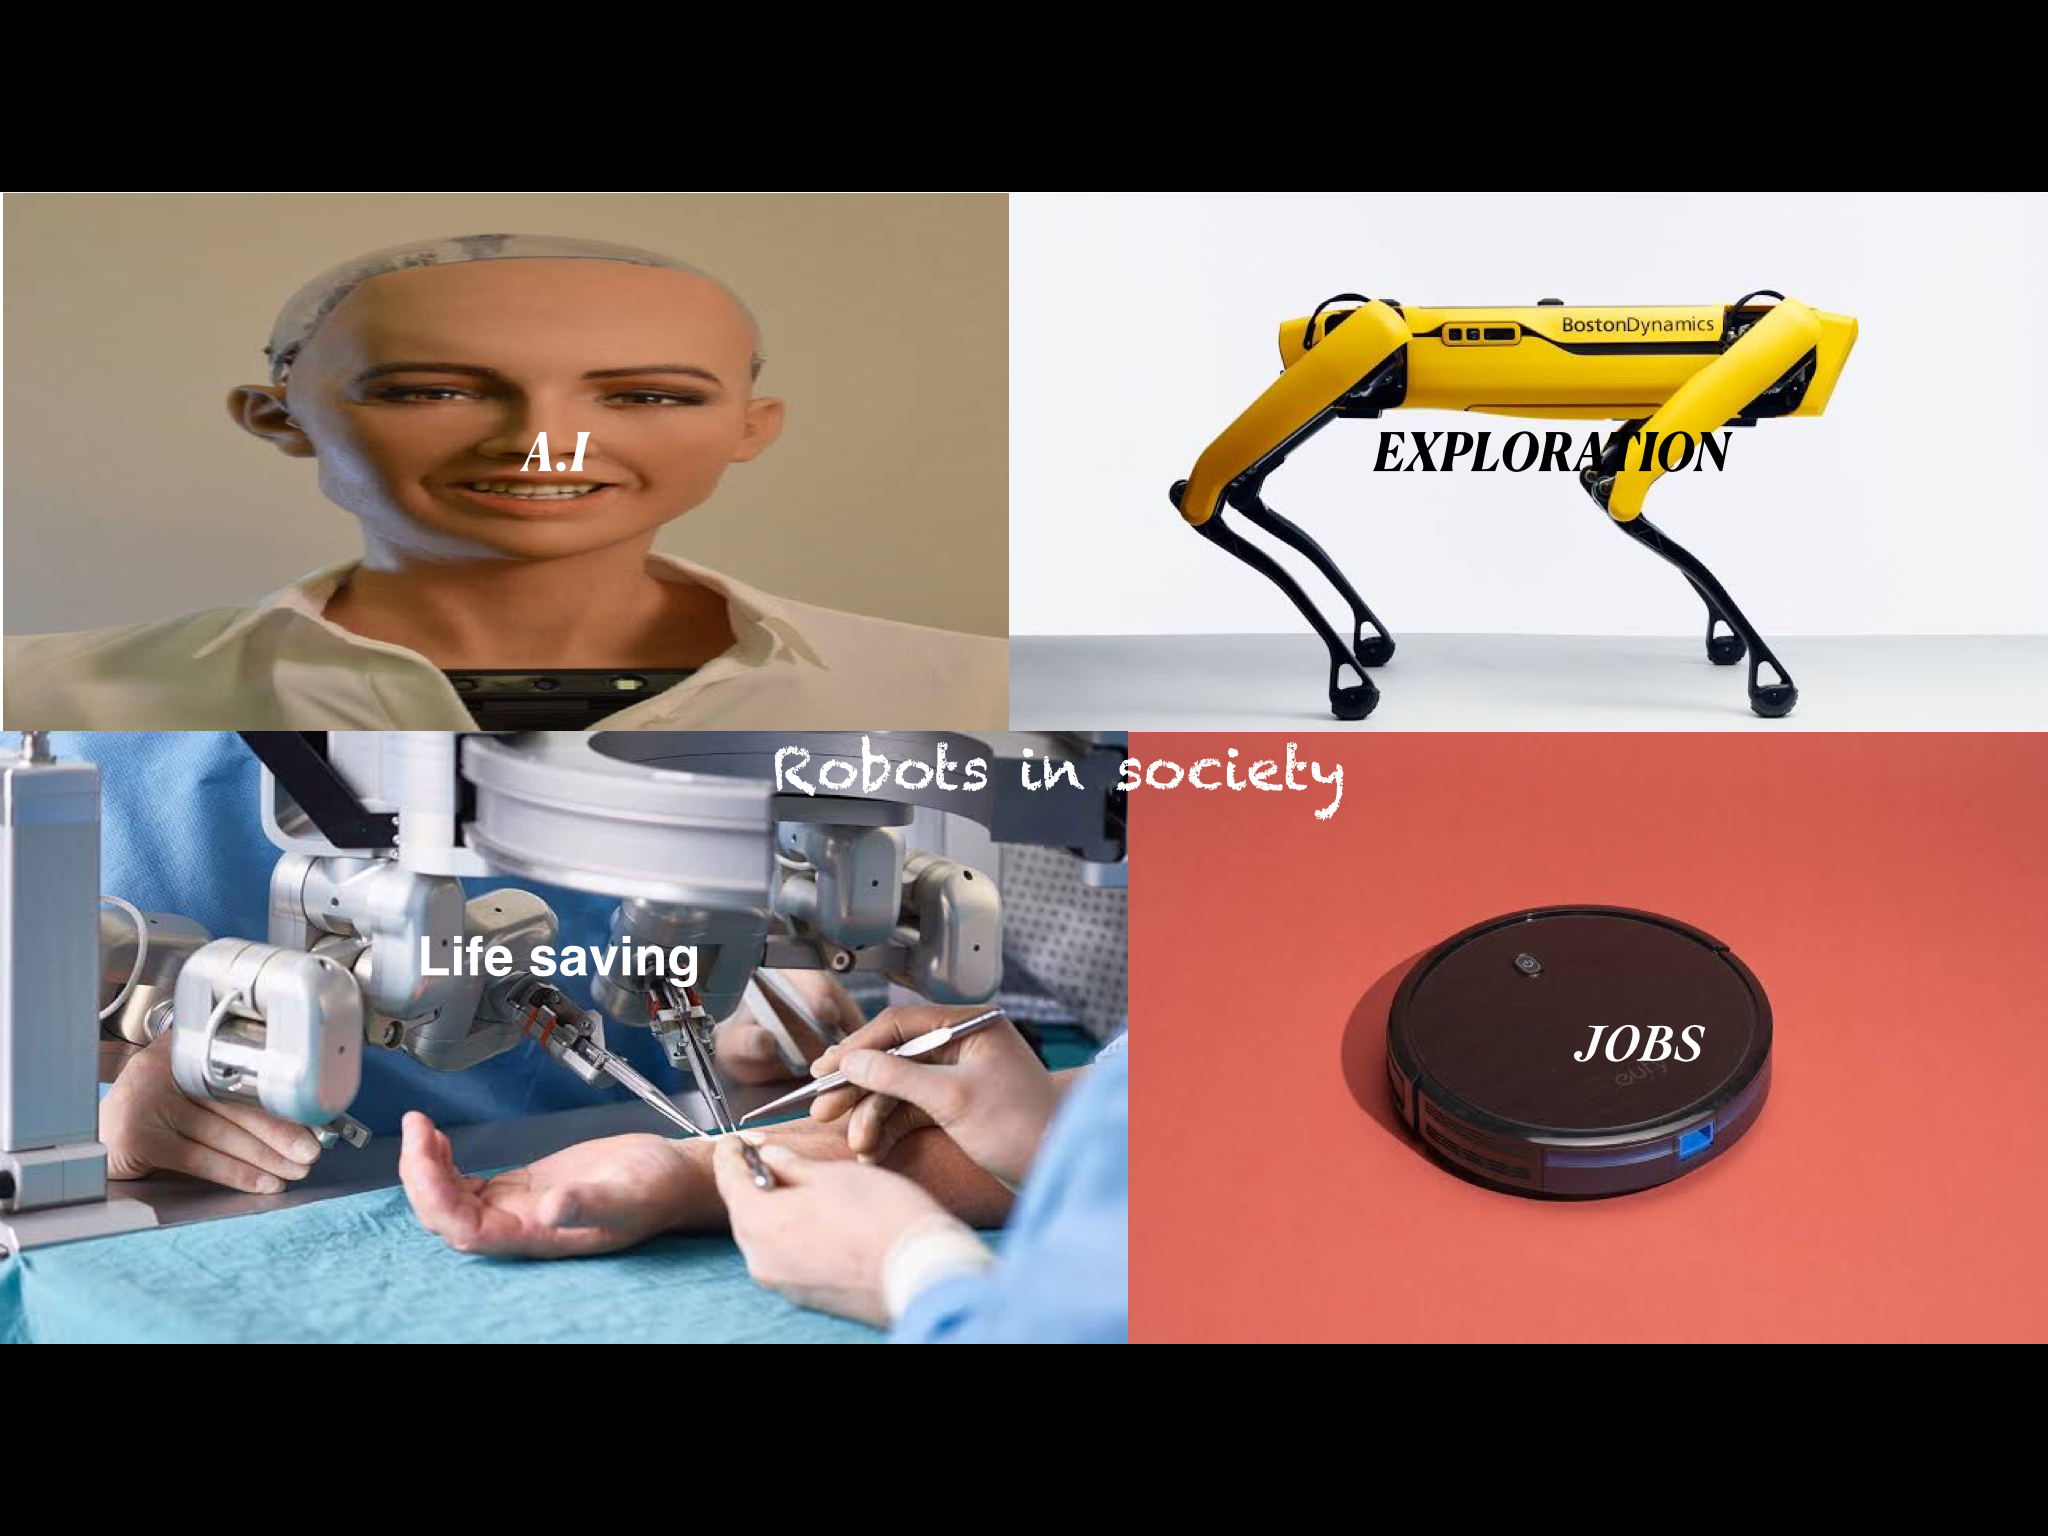 Copy of Robots & Society (28_07_2022 at 3_12 PM).png